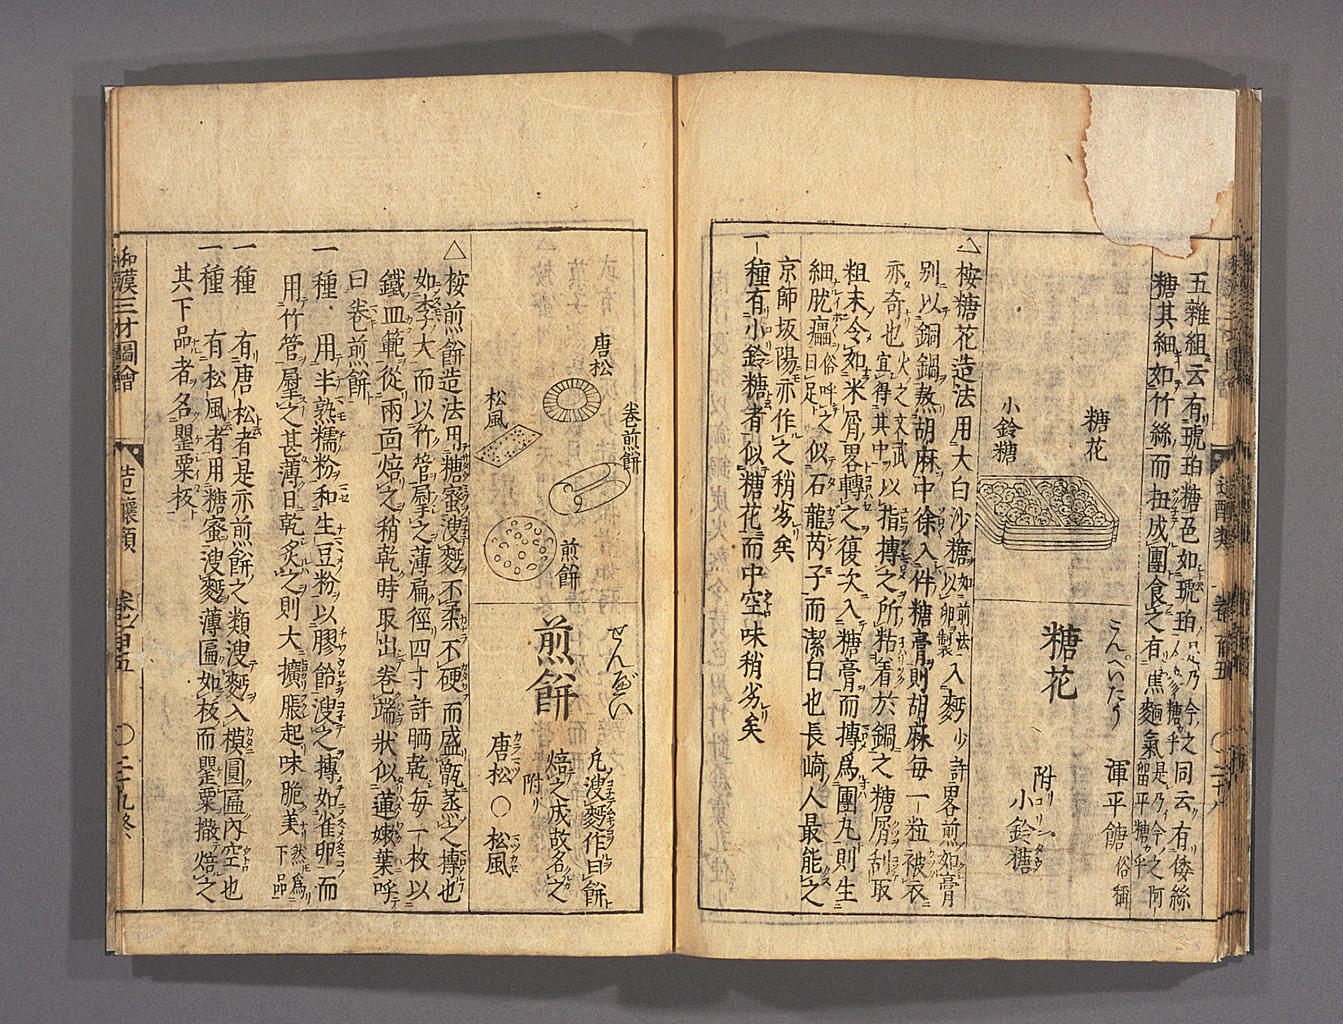 和漢三才図会（拡大画像 209-003） | 江戸時代の日蘭交流